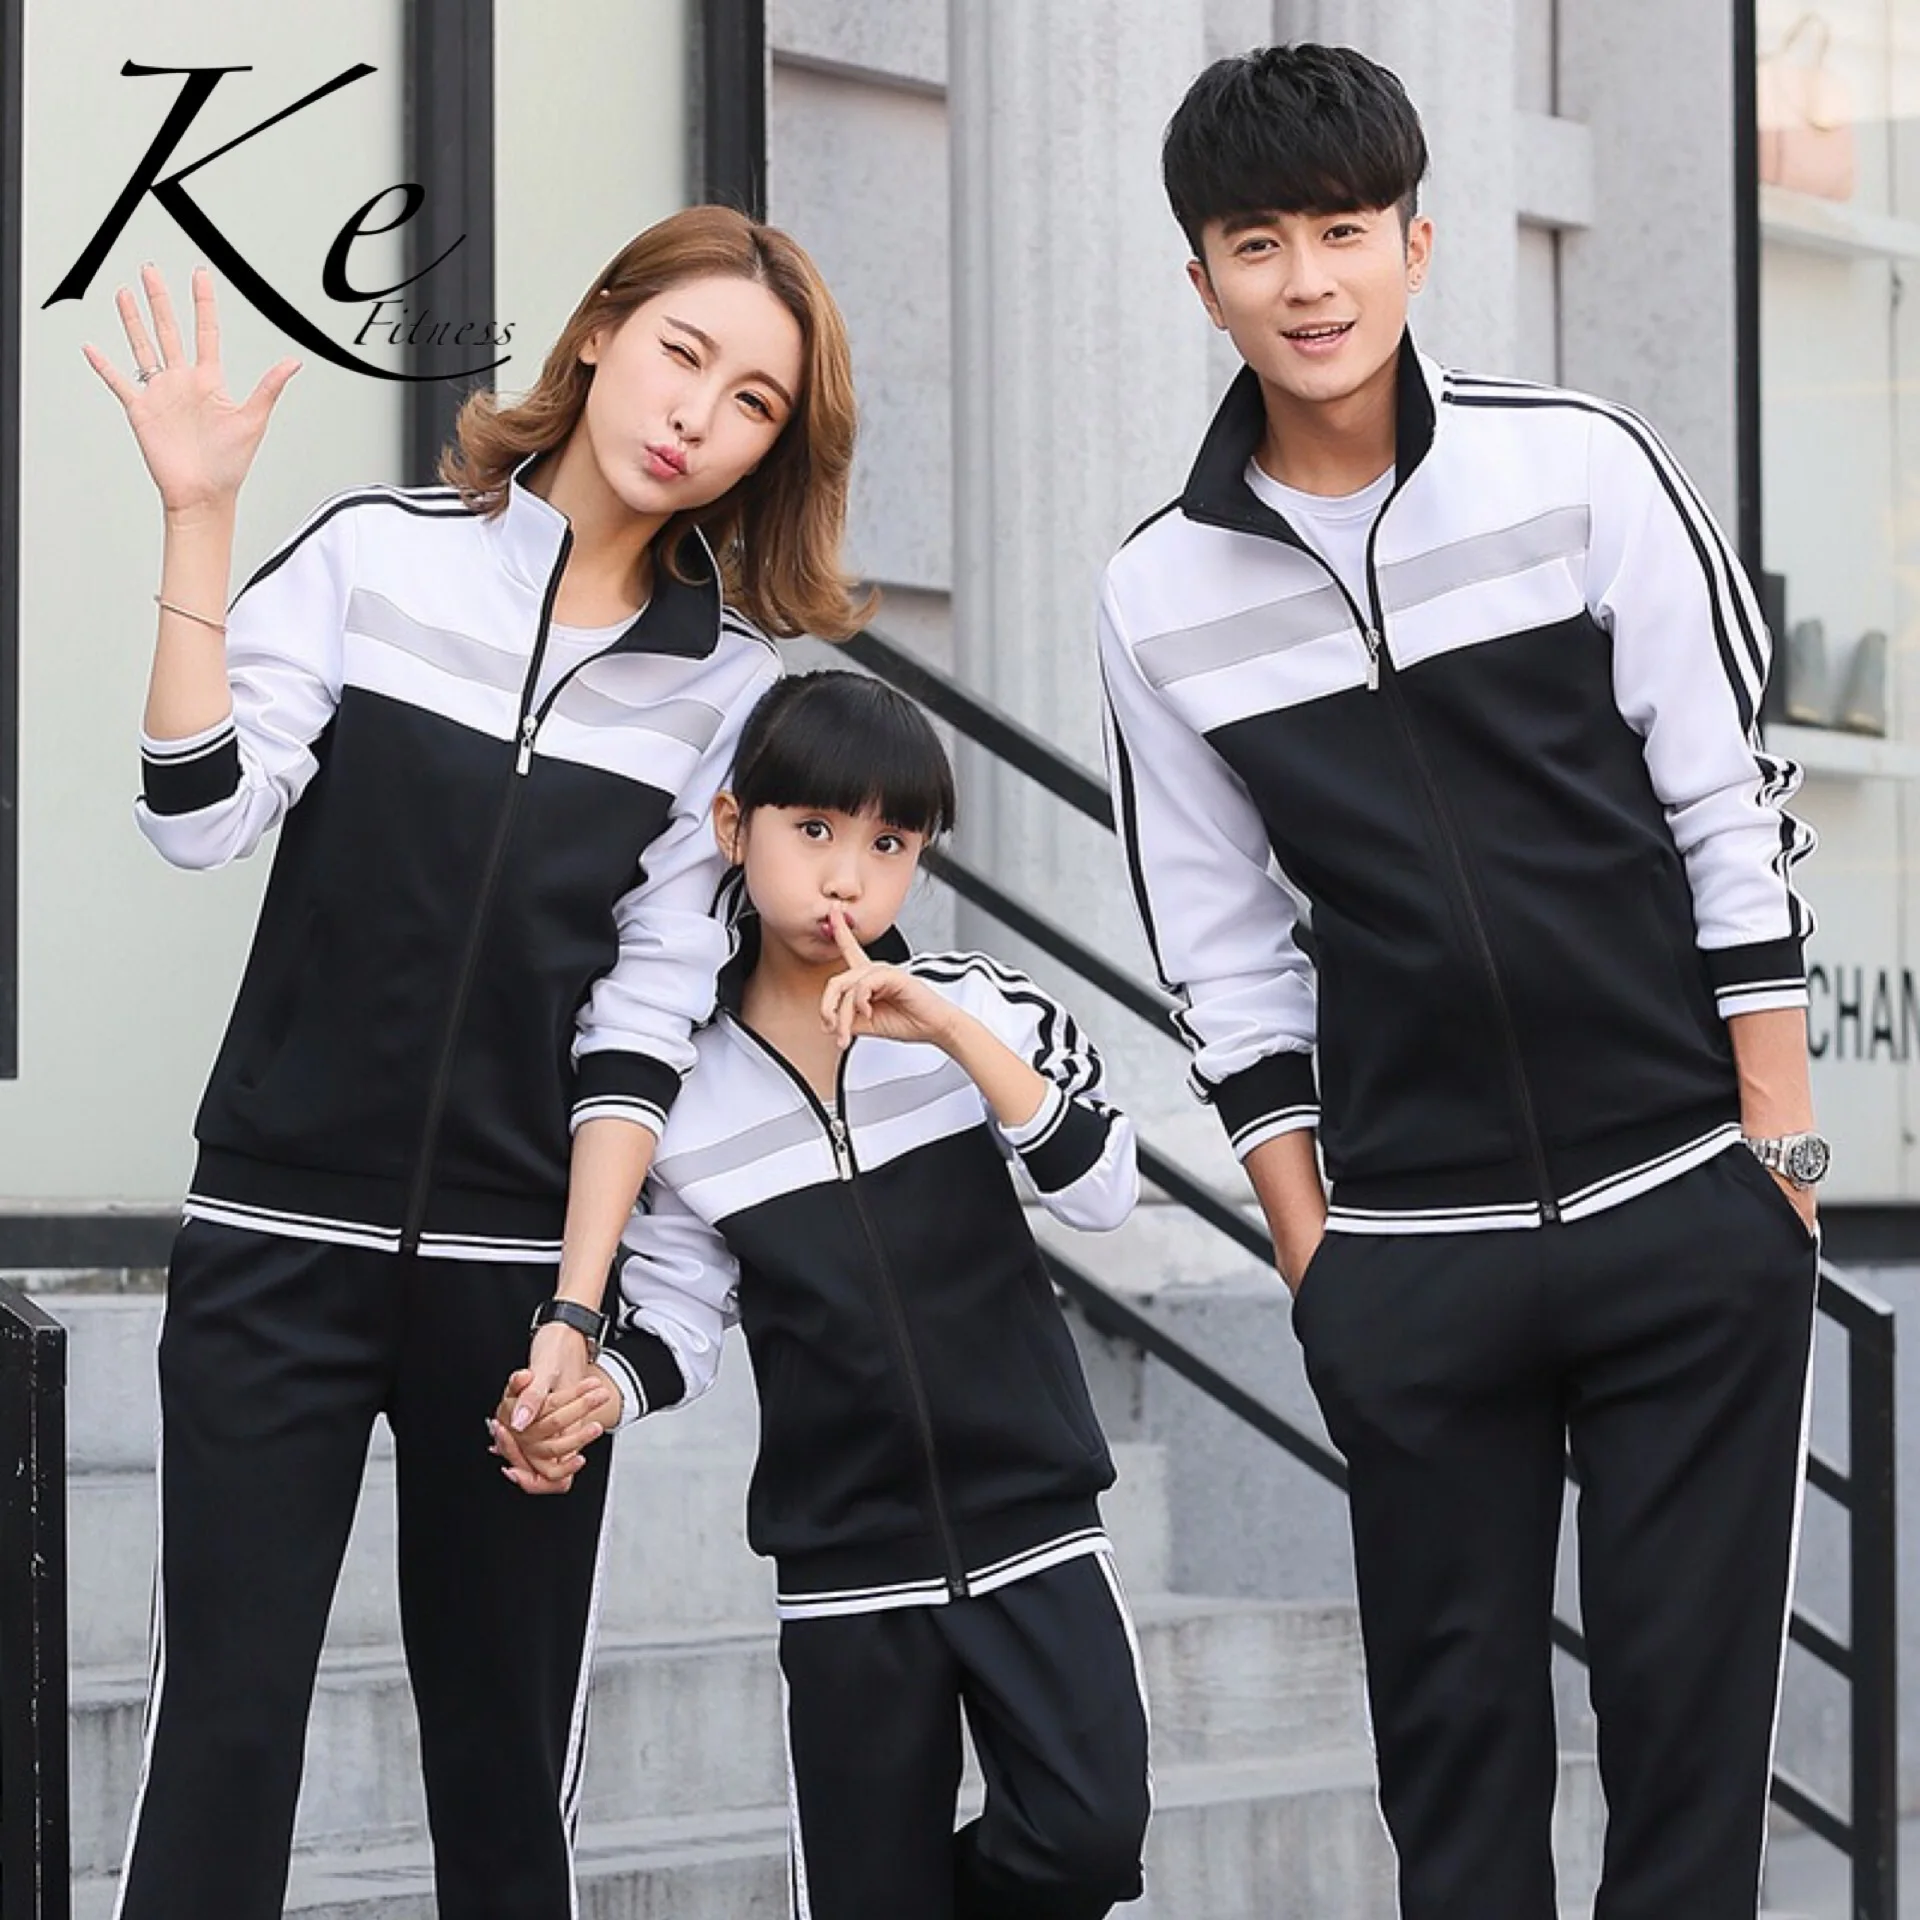 KE/ спортивный комплект для пары, большие размеры X, L, M, XL 2XL 3XL 4XL 5XL, семейный осенний спортивный костюм для мужчин и женщин, зимняя спортивная одежда